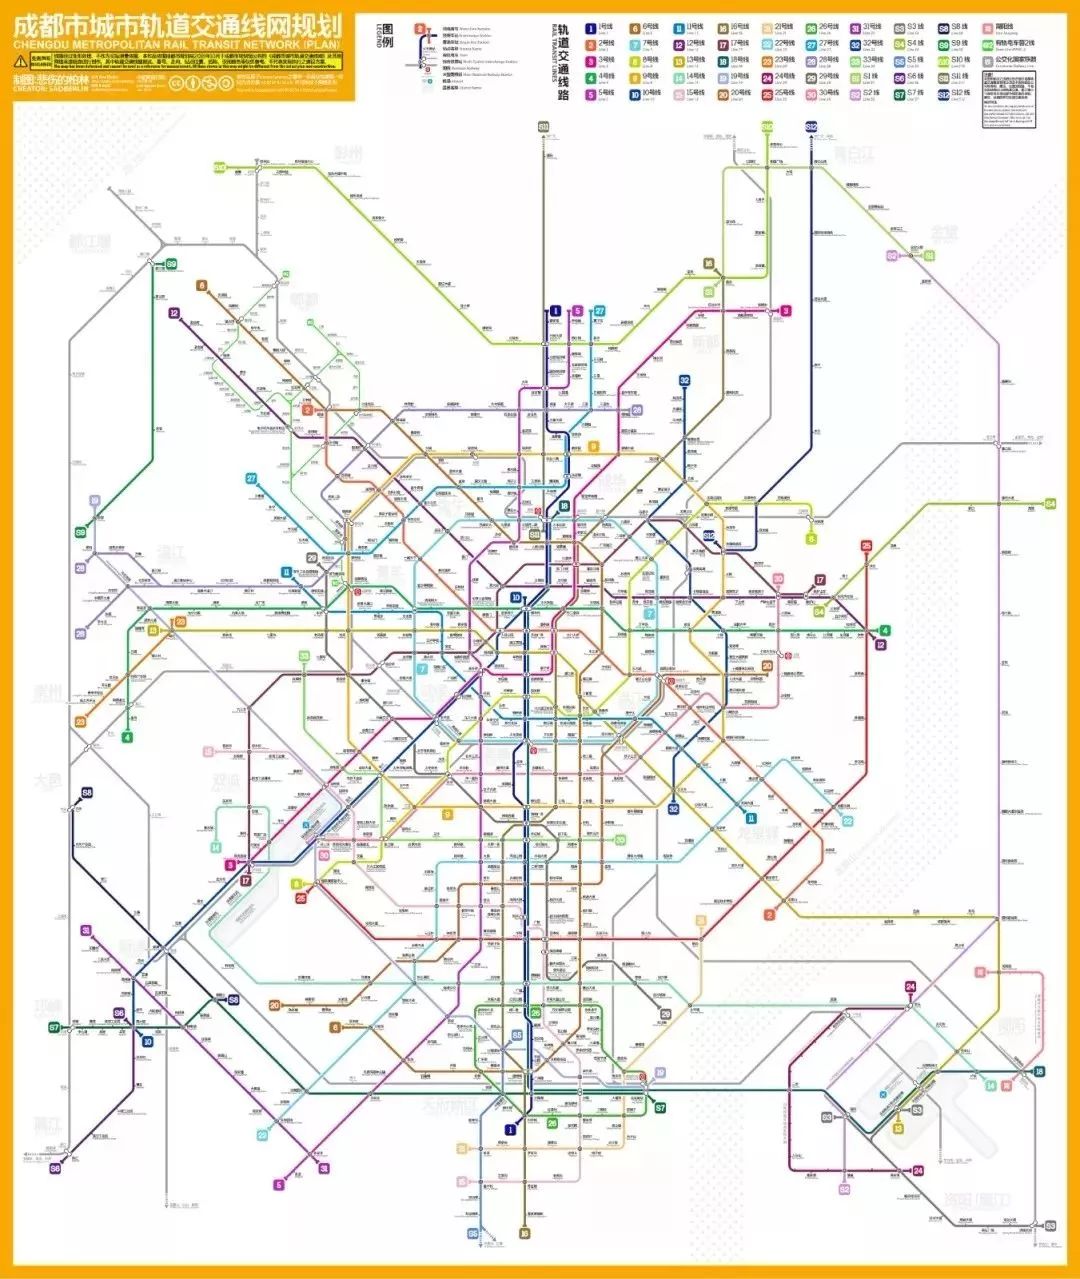 2020年 据《成都市城市轨道交通线网规划》到2035年,成都地铁线路将达